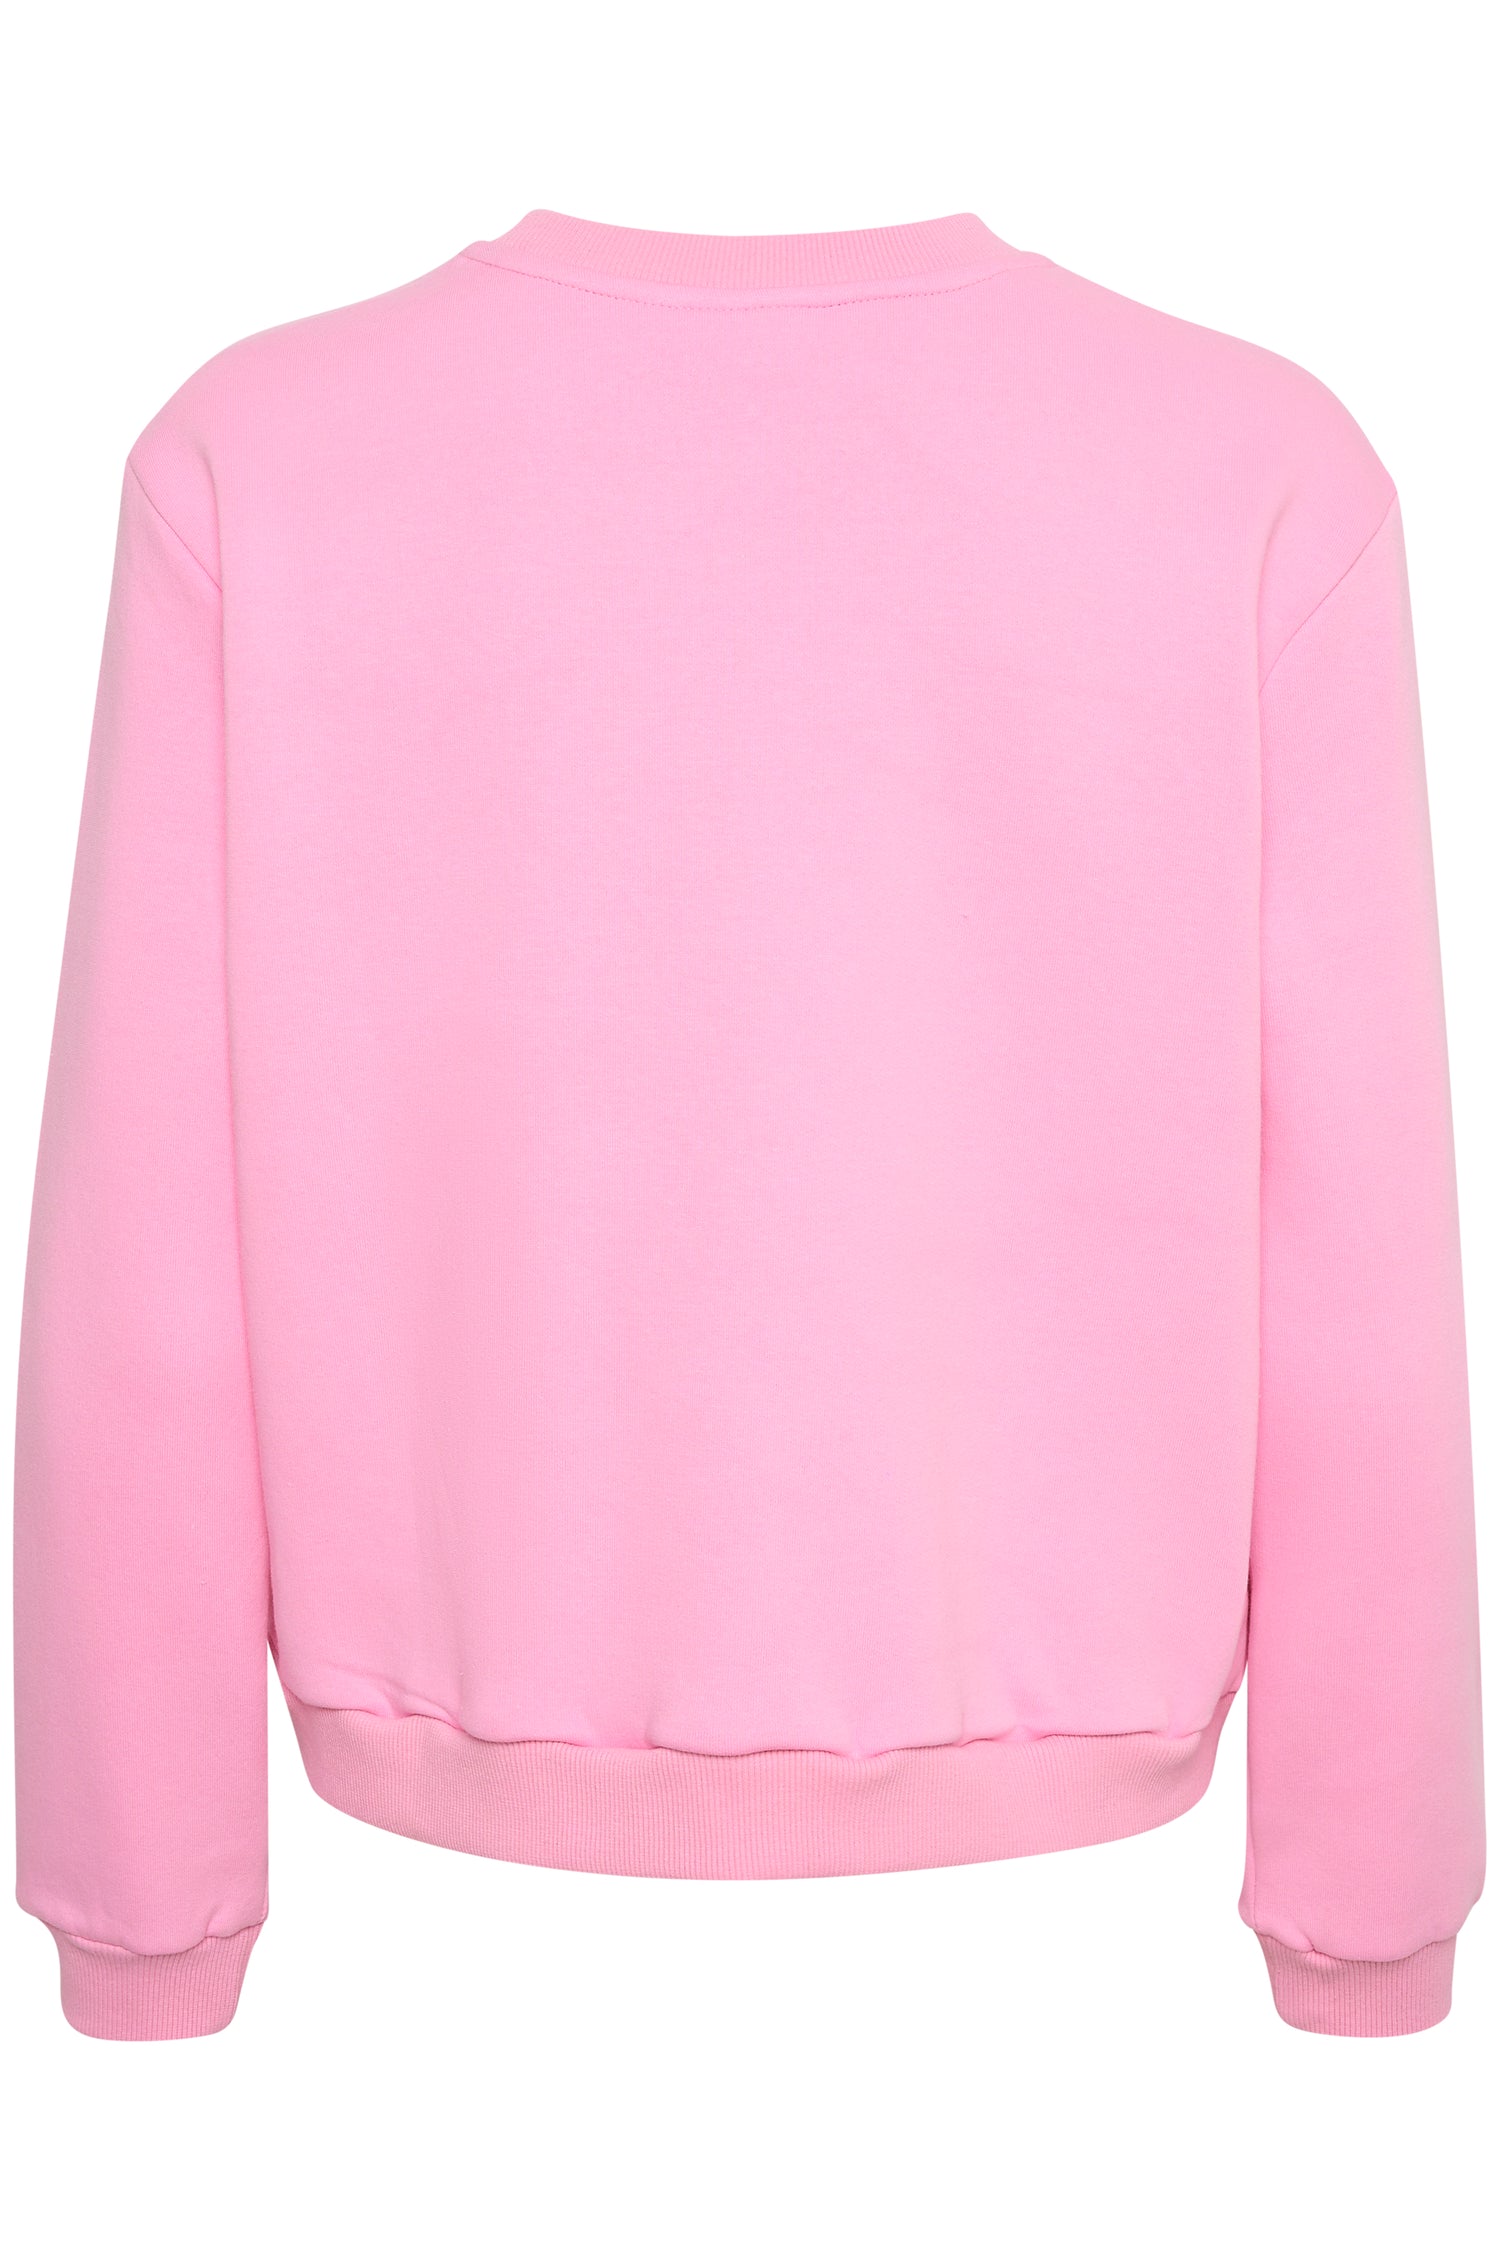 Saint Tropez Dajla Bisous Sweatshirt in Bonbon Pink